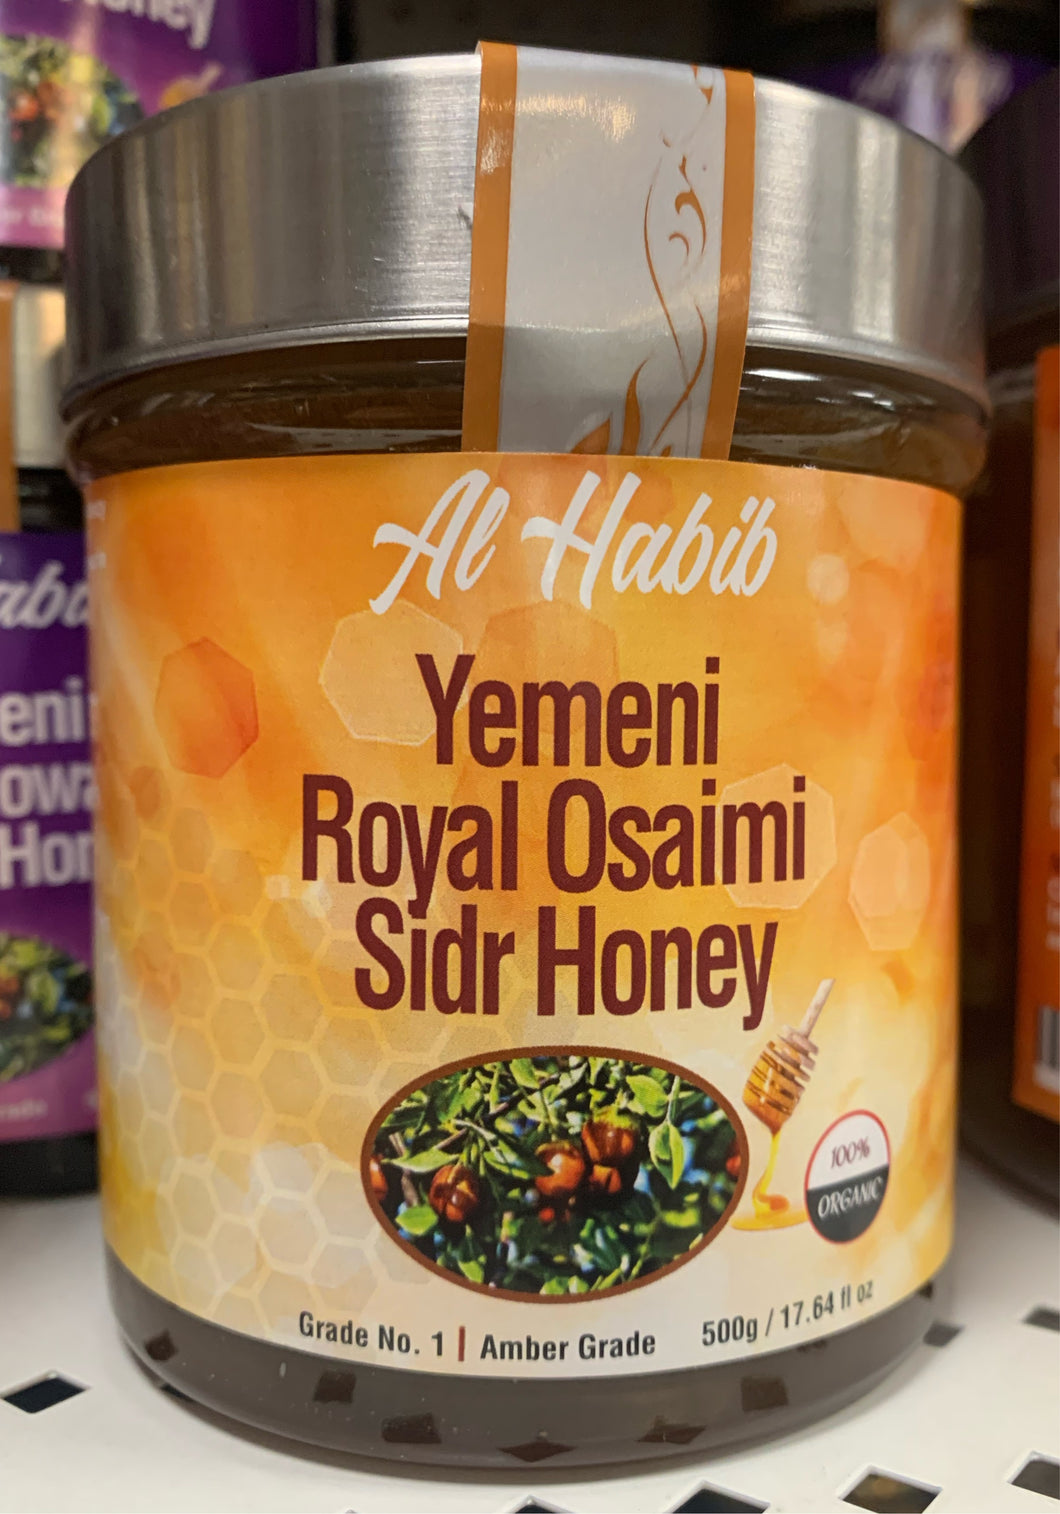 Yemeni Royal Osaimi Sidr Honey